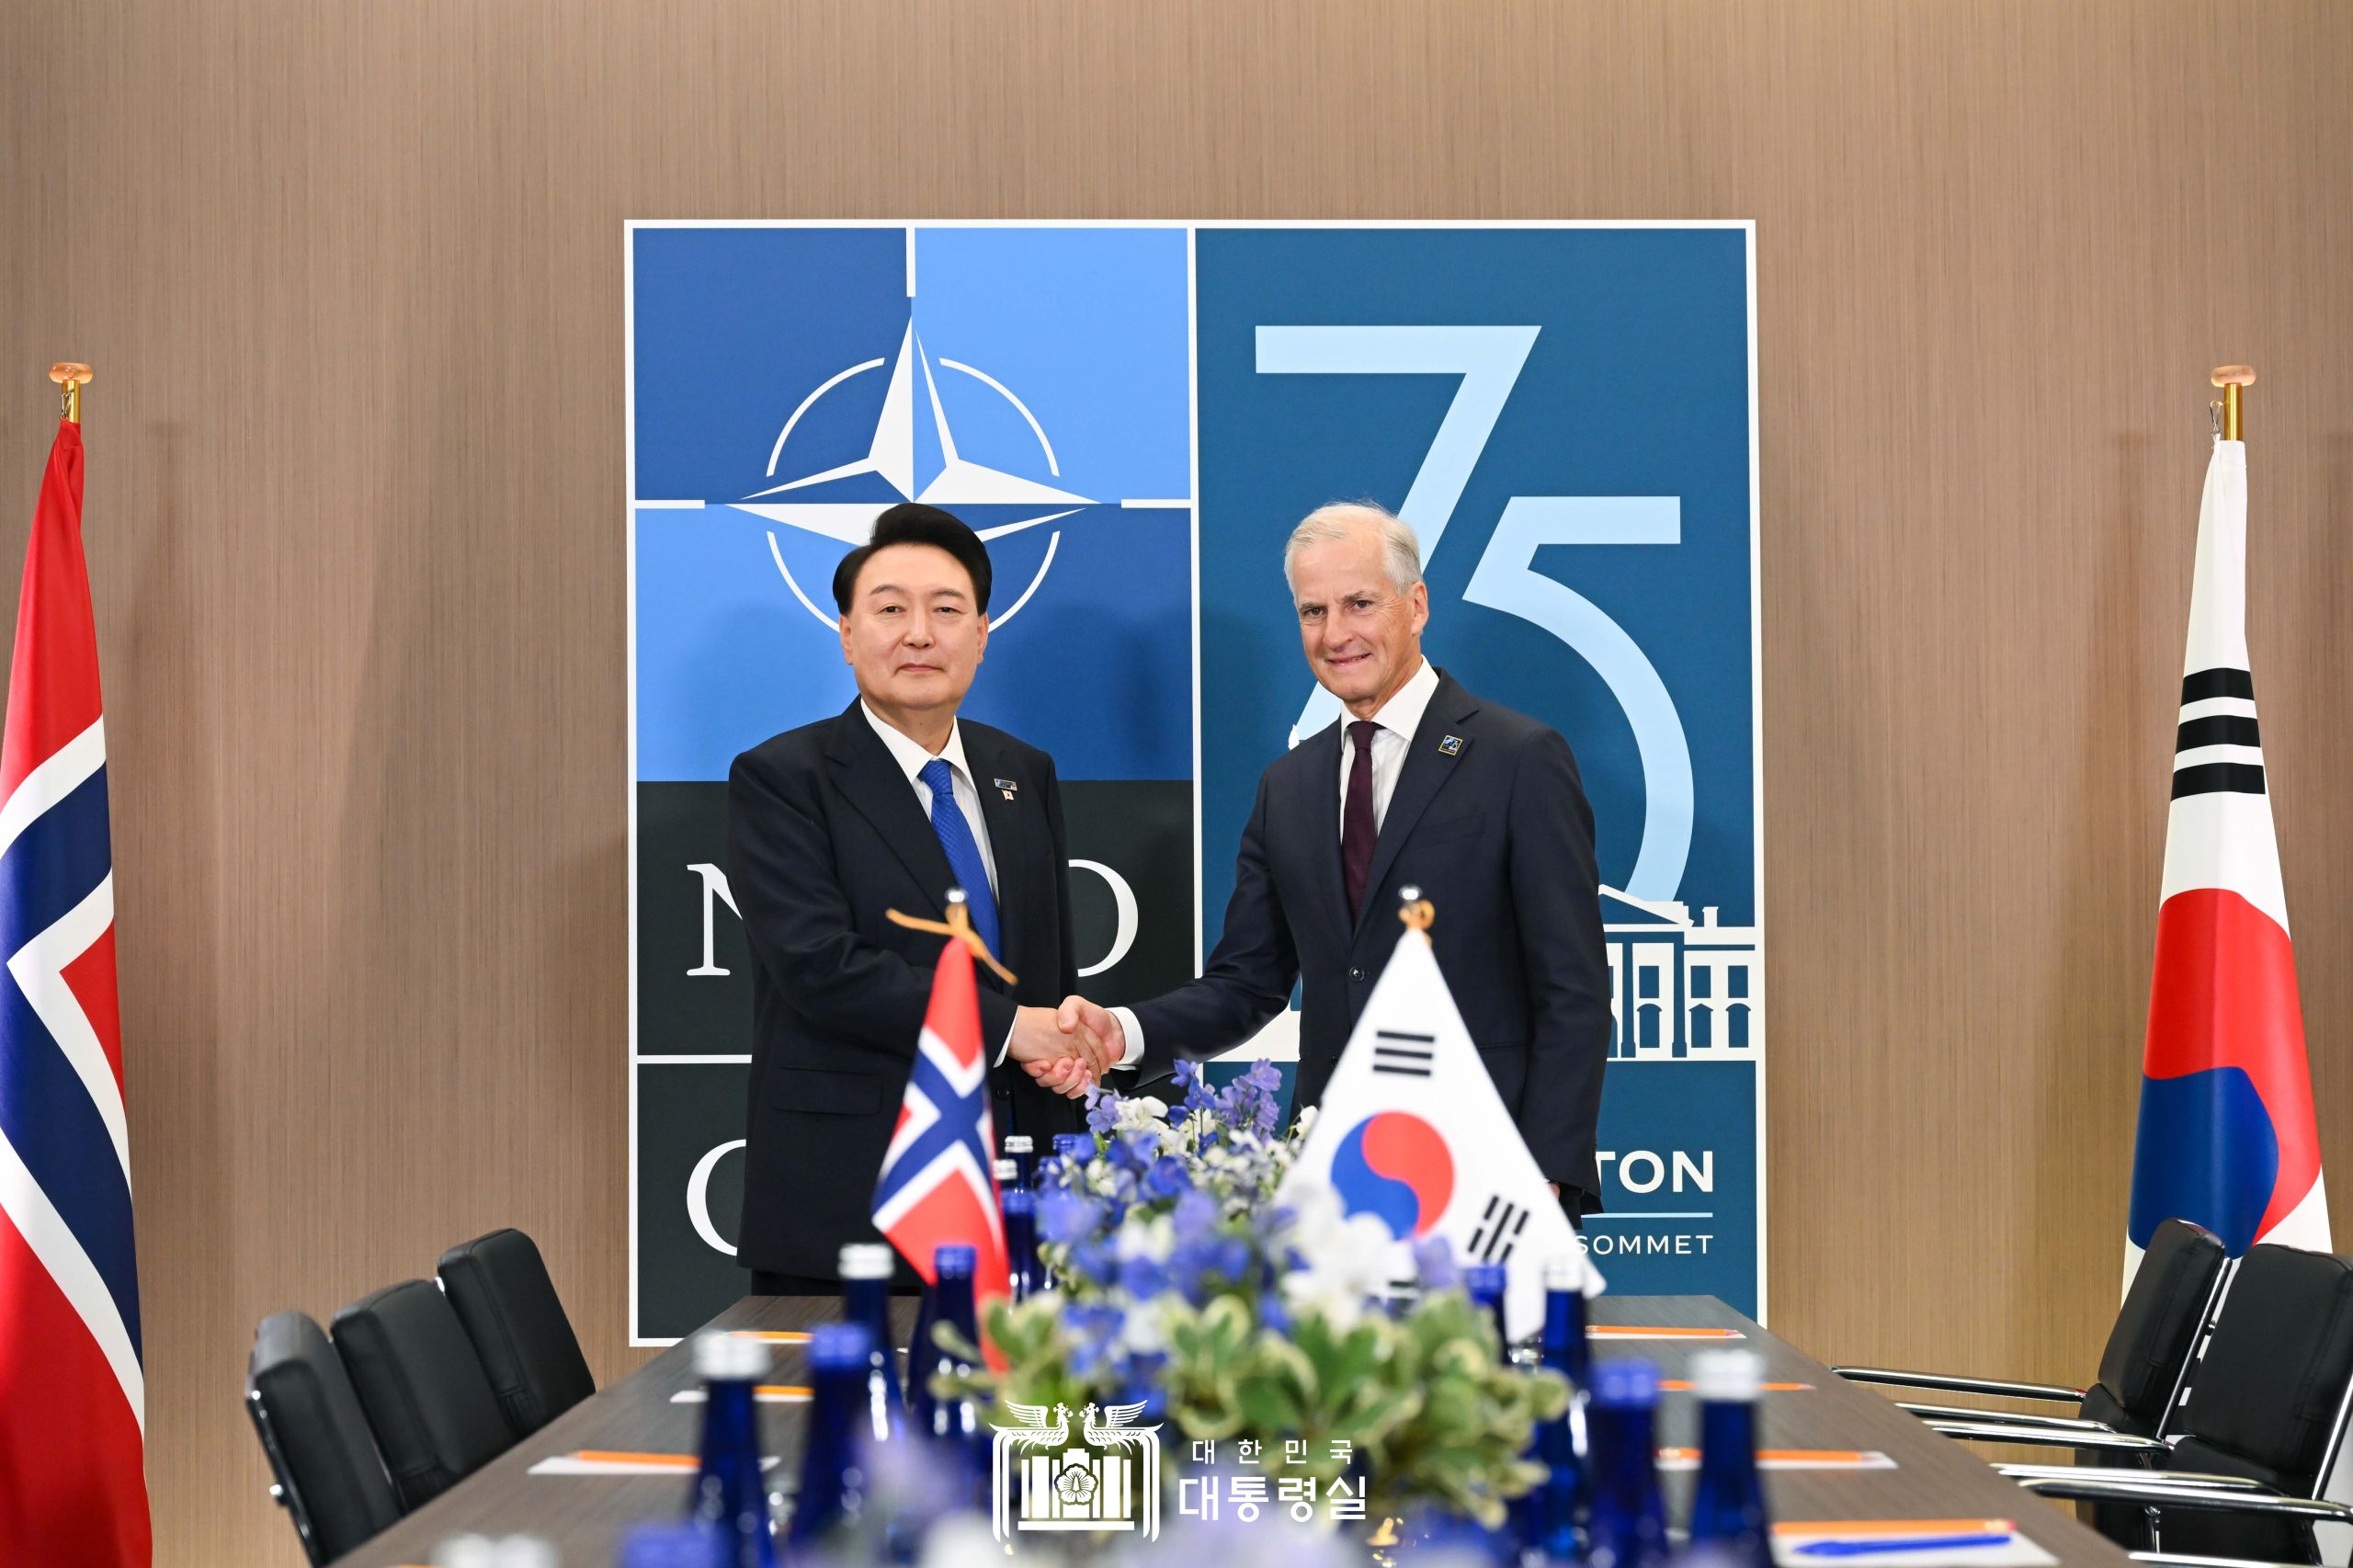 윤석열 대통령, NATO 정상회의 참석 계기 노르웨이 총리와 정상회담 개최